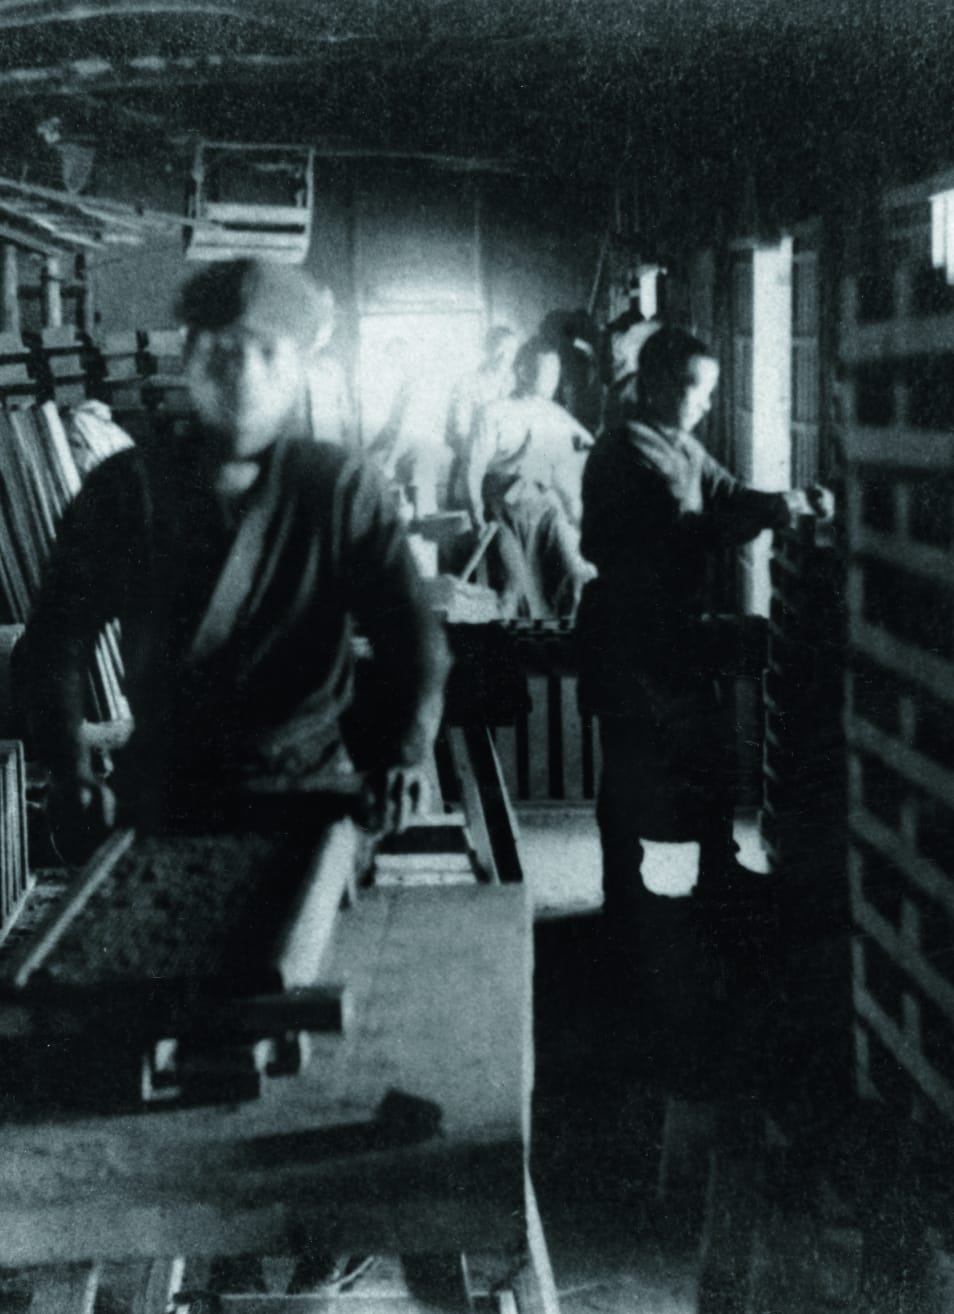 法蘭克・洛伊・萊特設計東京帝國飯店邀請伊奈初之丞及伊奈長三郎擔任技術顧問，生產磁磚。